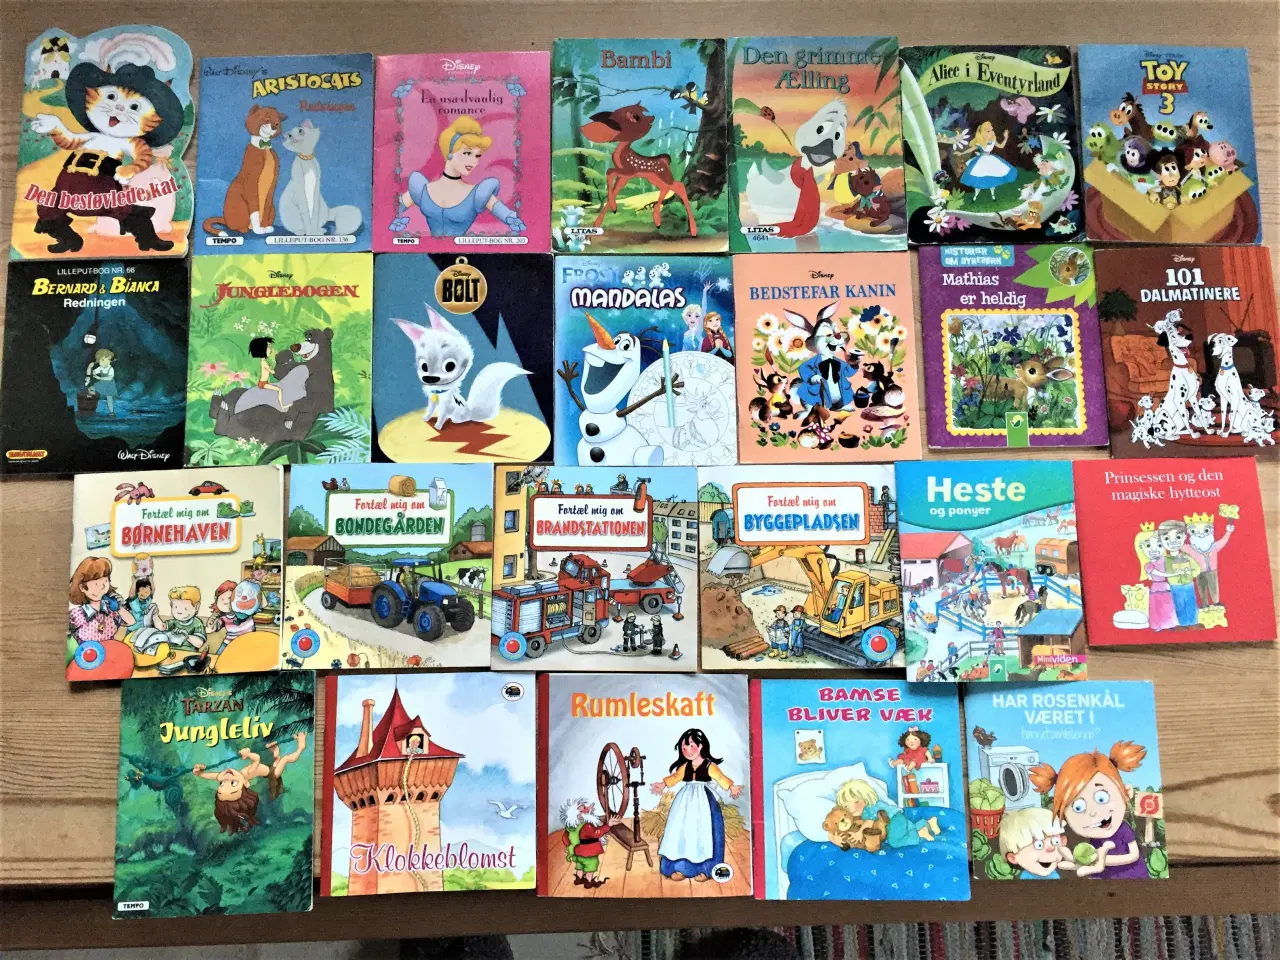 Billede 1 - 25 små børnebøger, Lilleput, Disney m.fl.